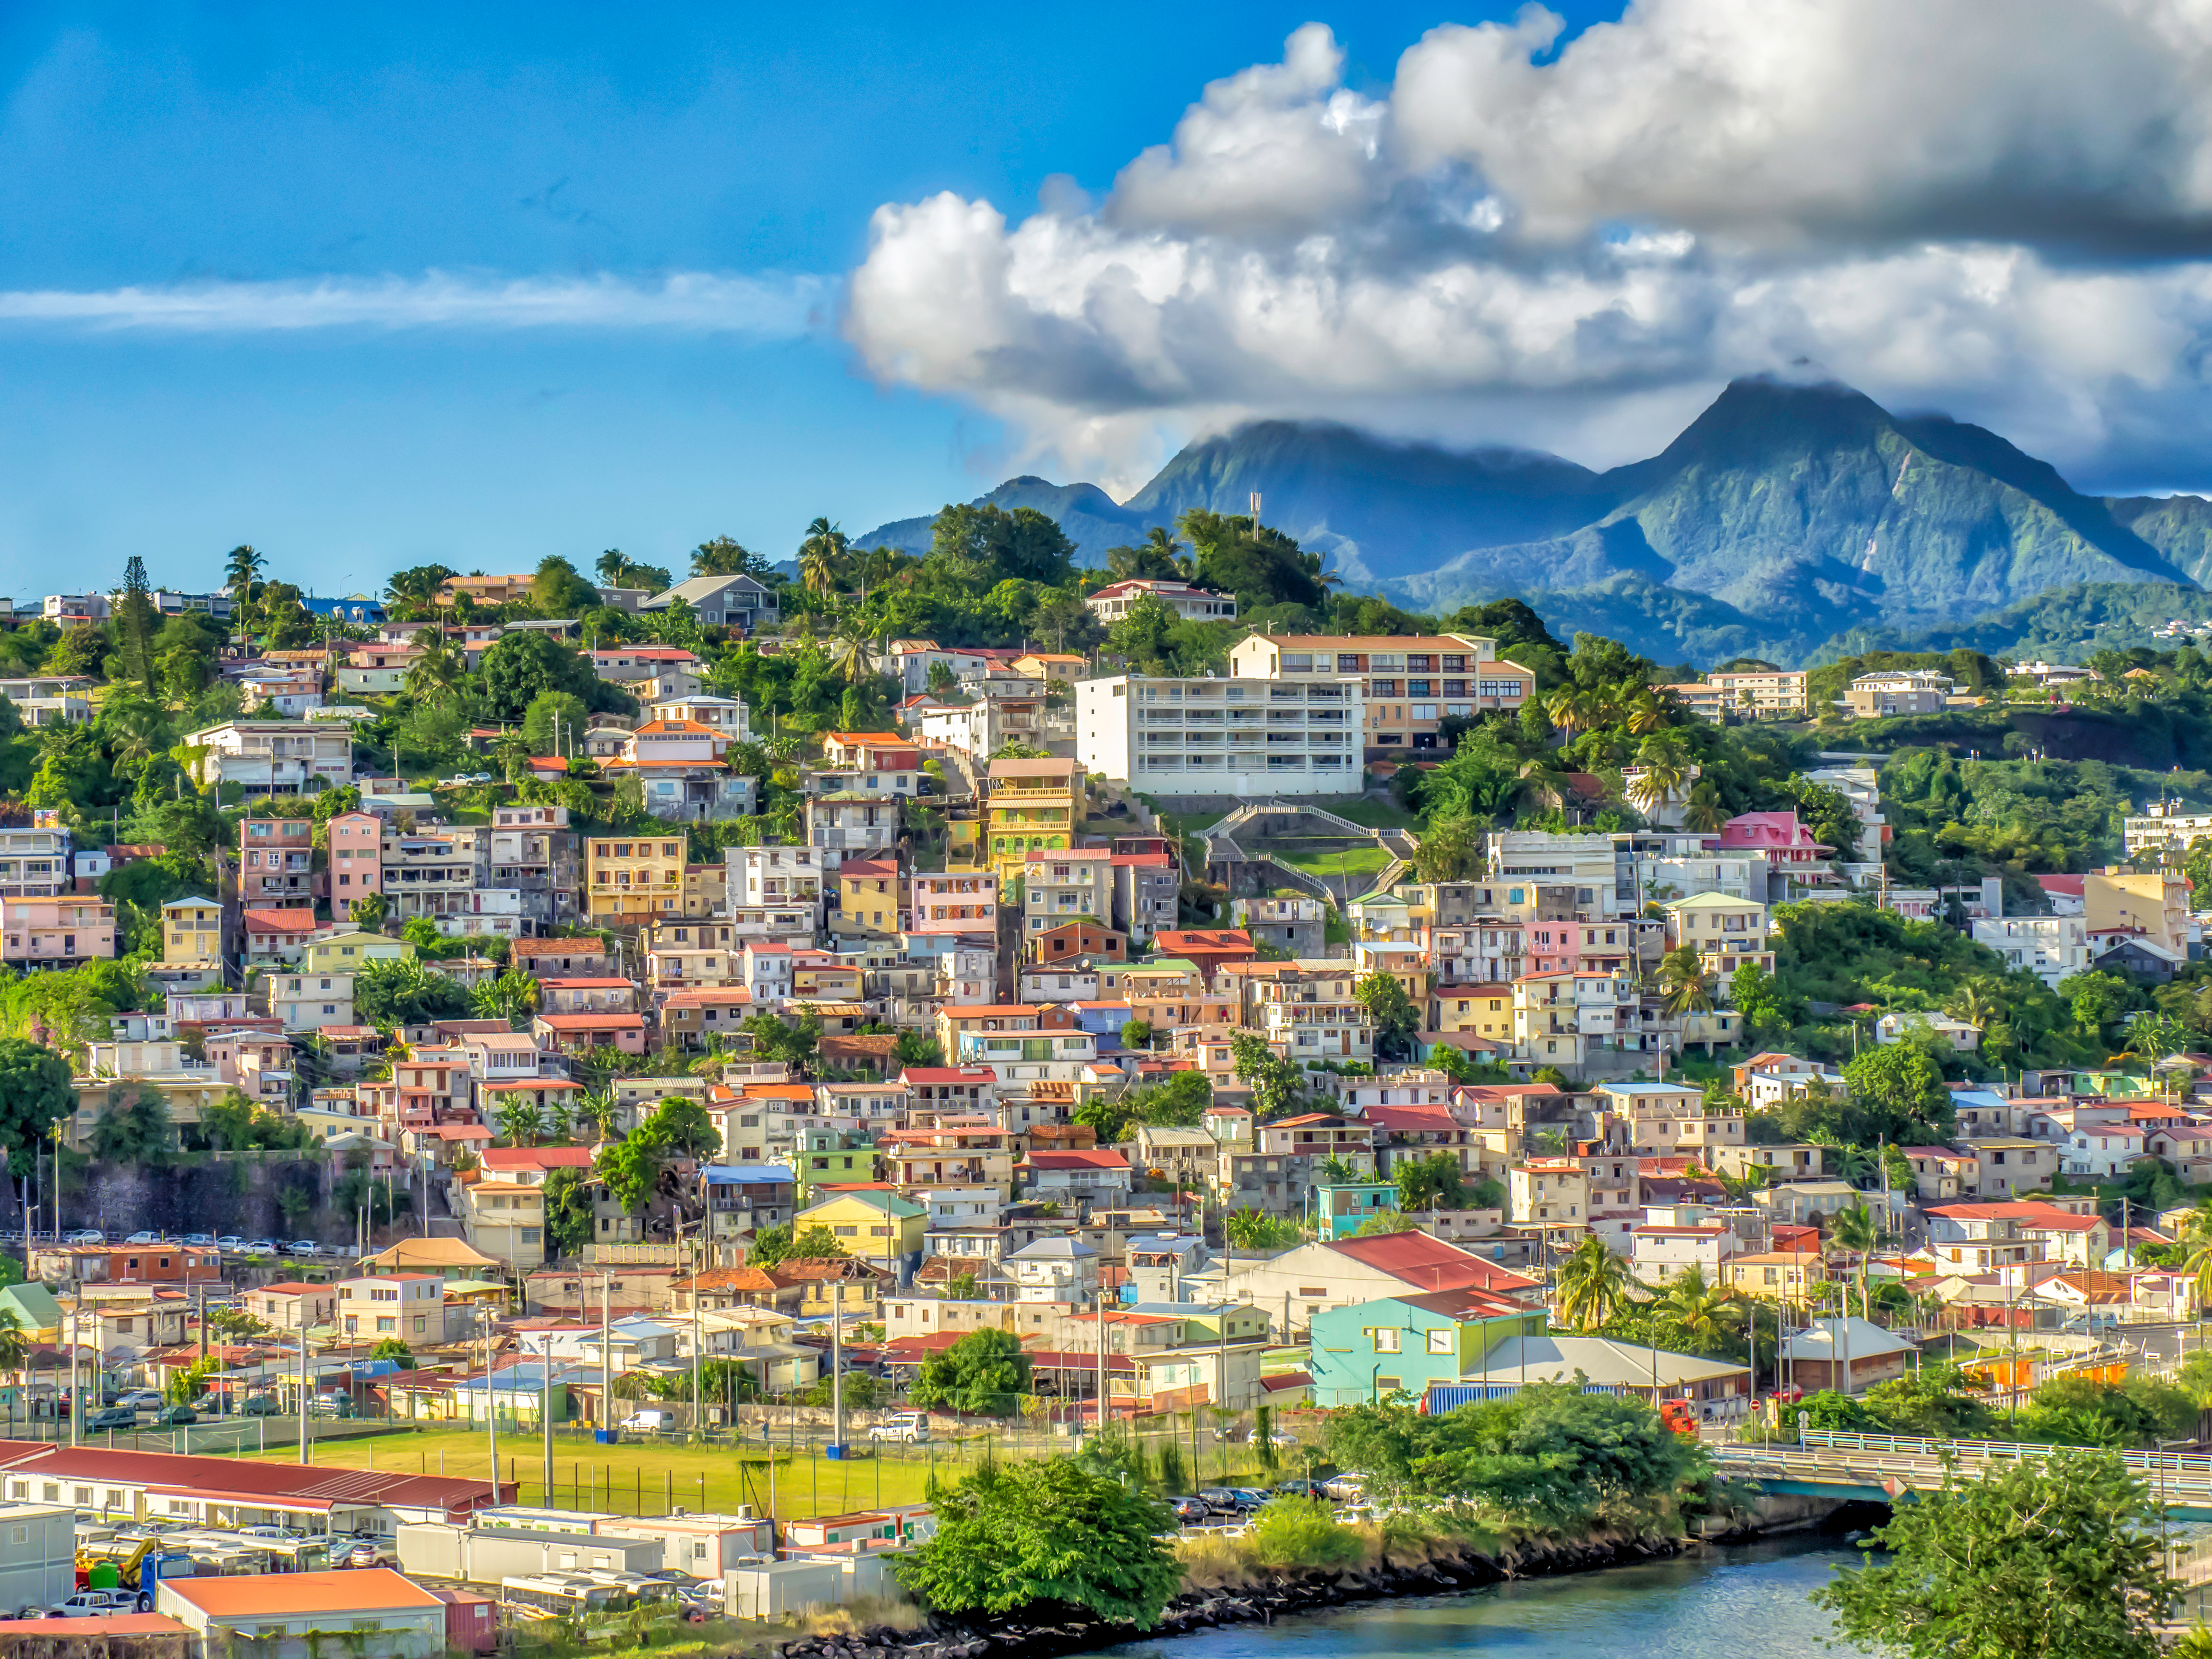     82% des Martiniquais se disent heureux selon une étude récente

